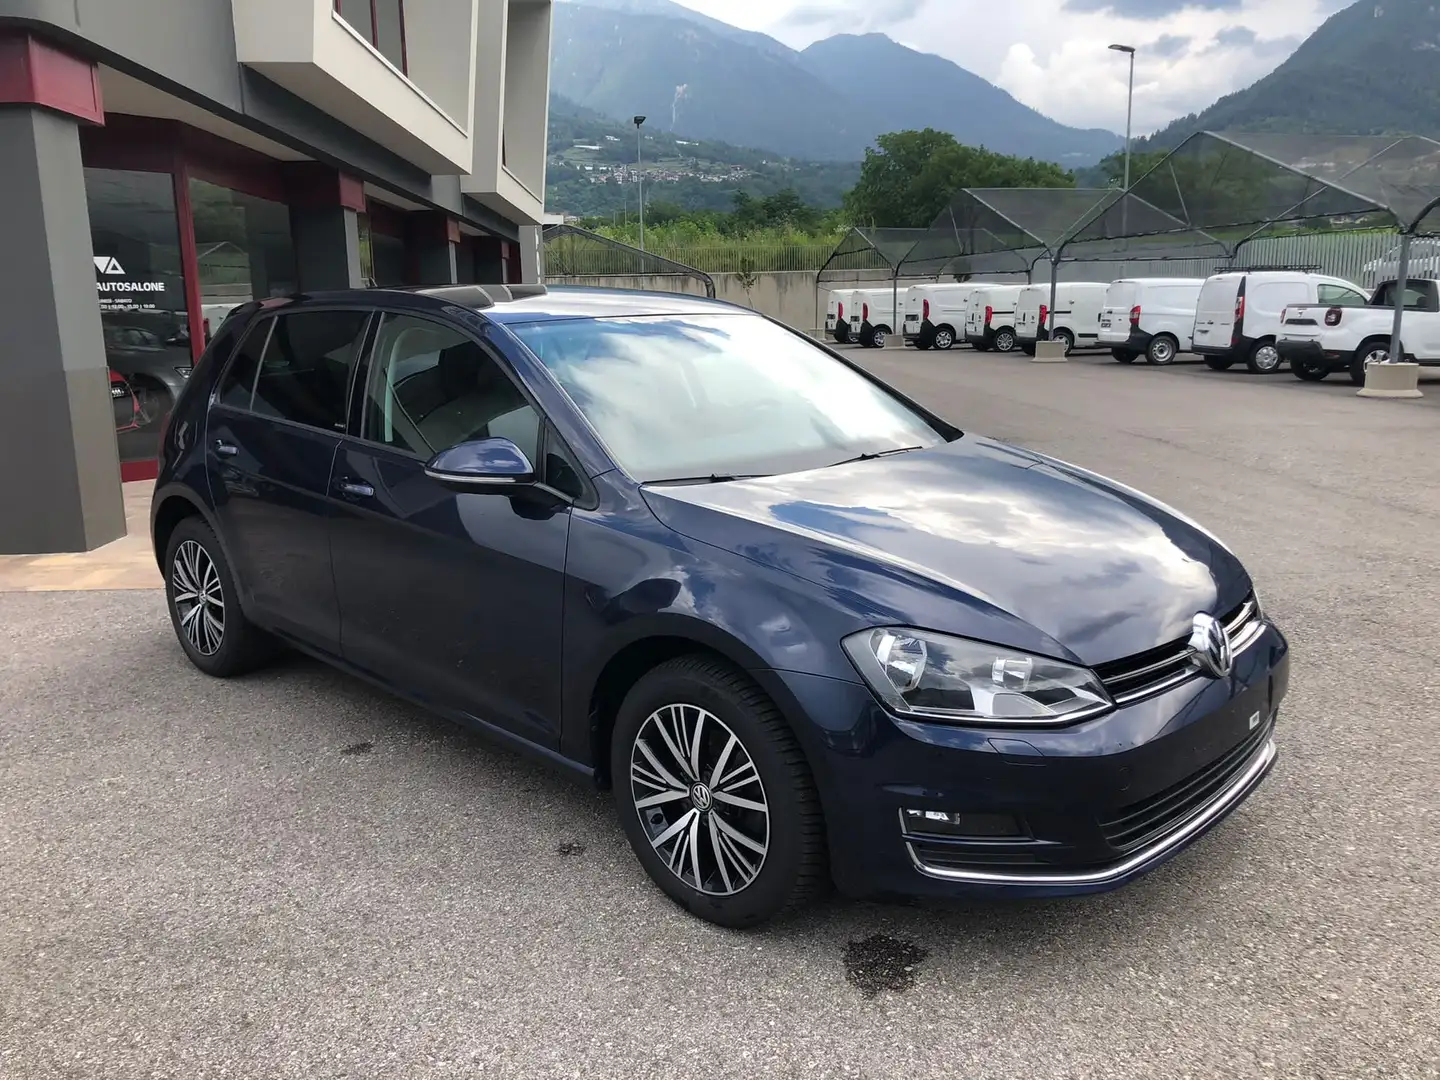 usato Volkswagen Golf Berlina a Scurelle - Trento per € 17.300,-